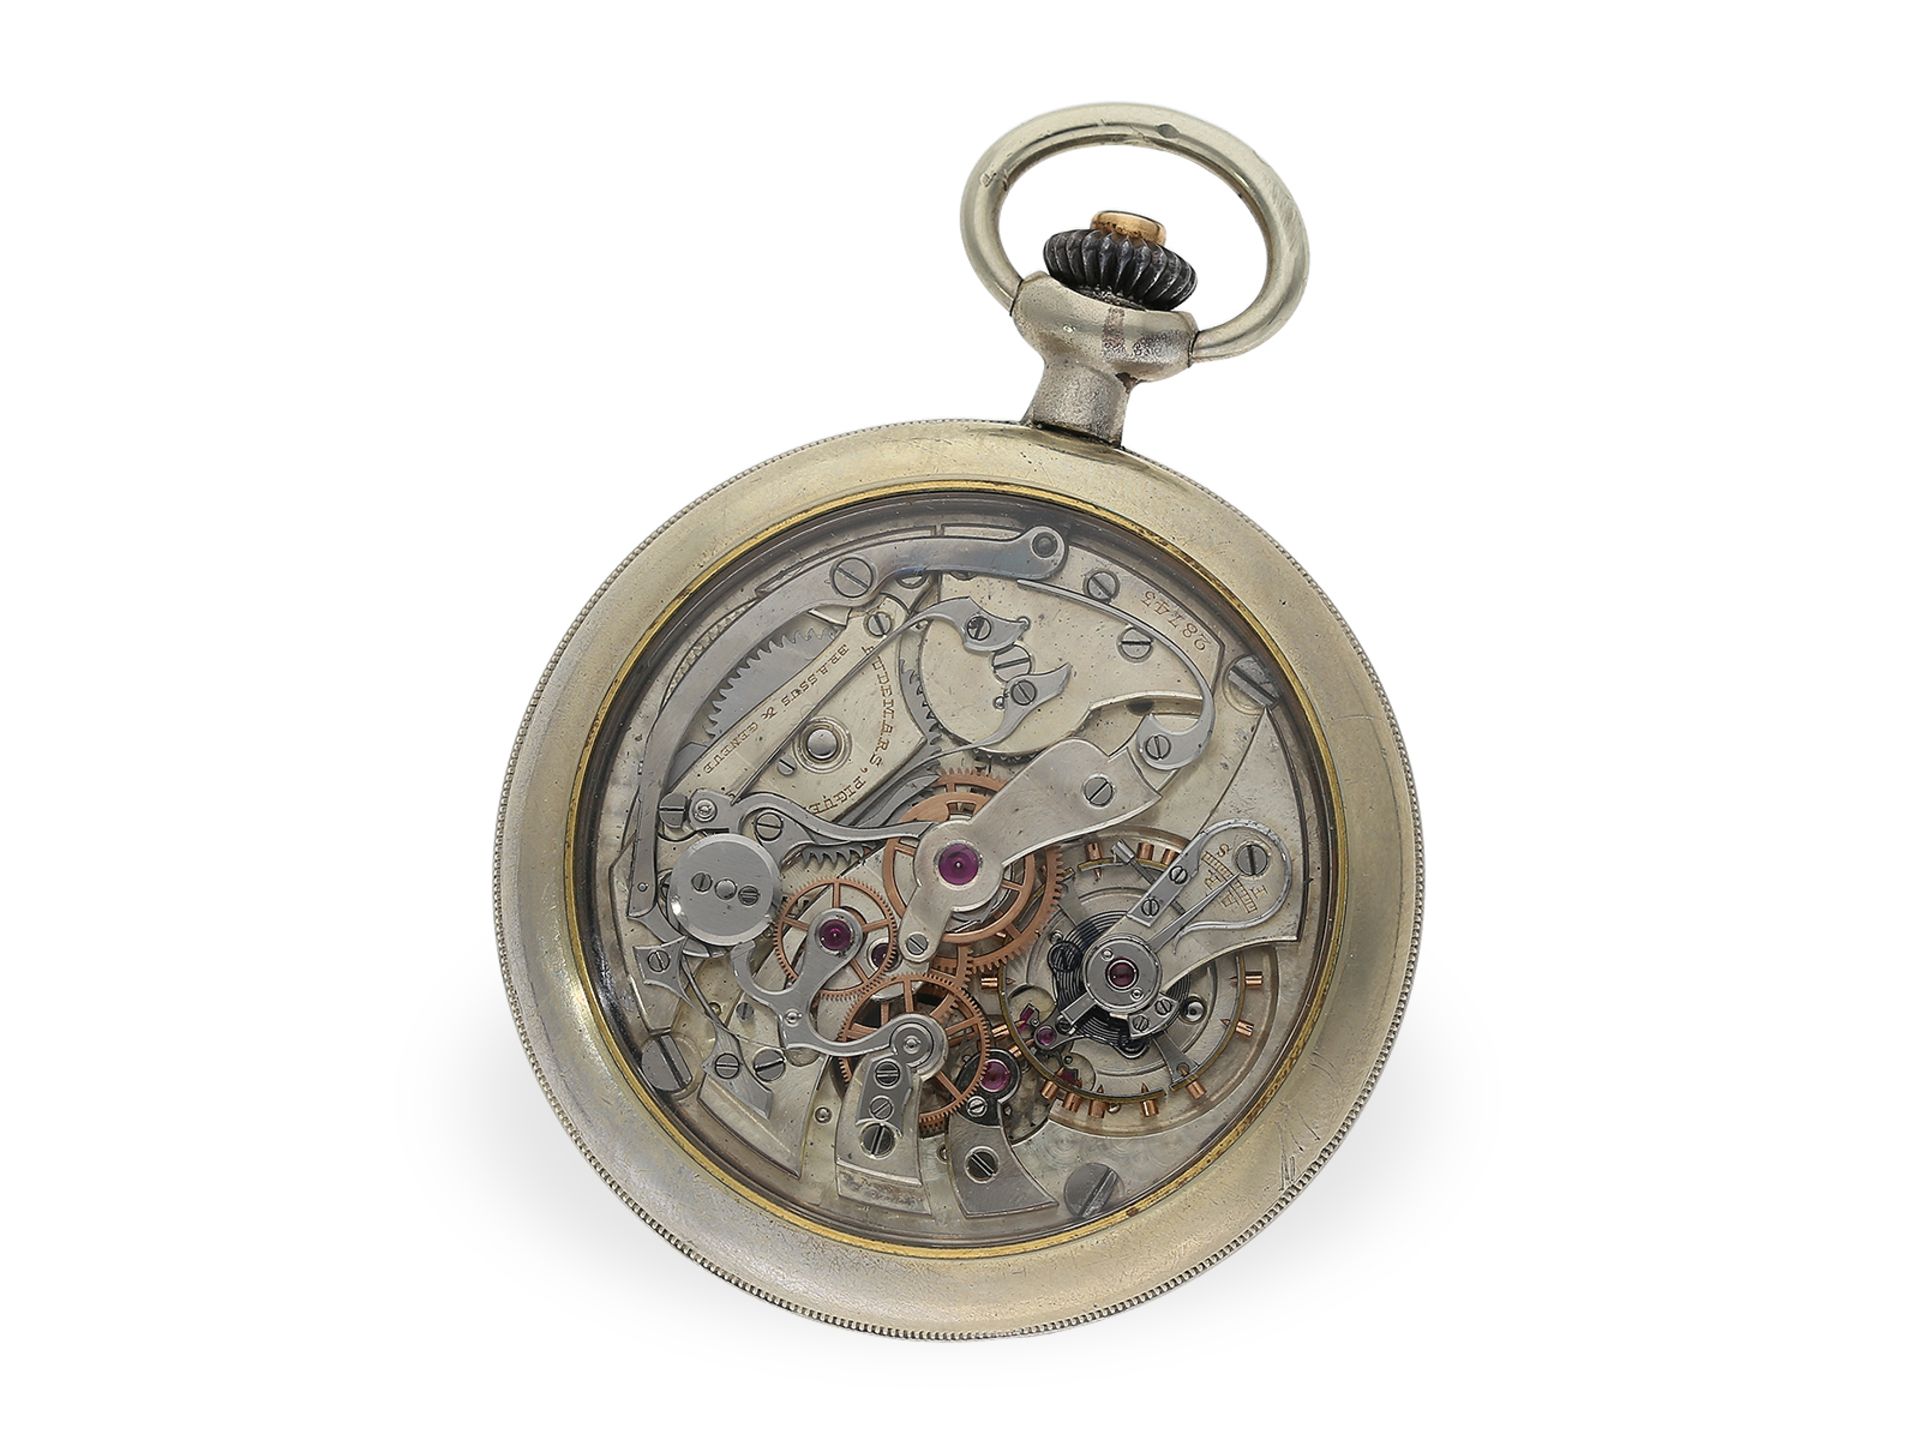 Taschenuhr: äußerst seltenes, hochkompliziertes Werk mit Pulsometer-Chronograph, Audemars Piguet, ca - Bild 2 aus 2